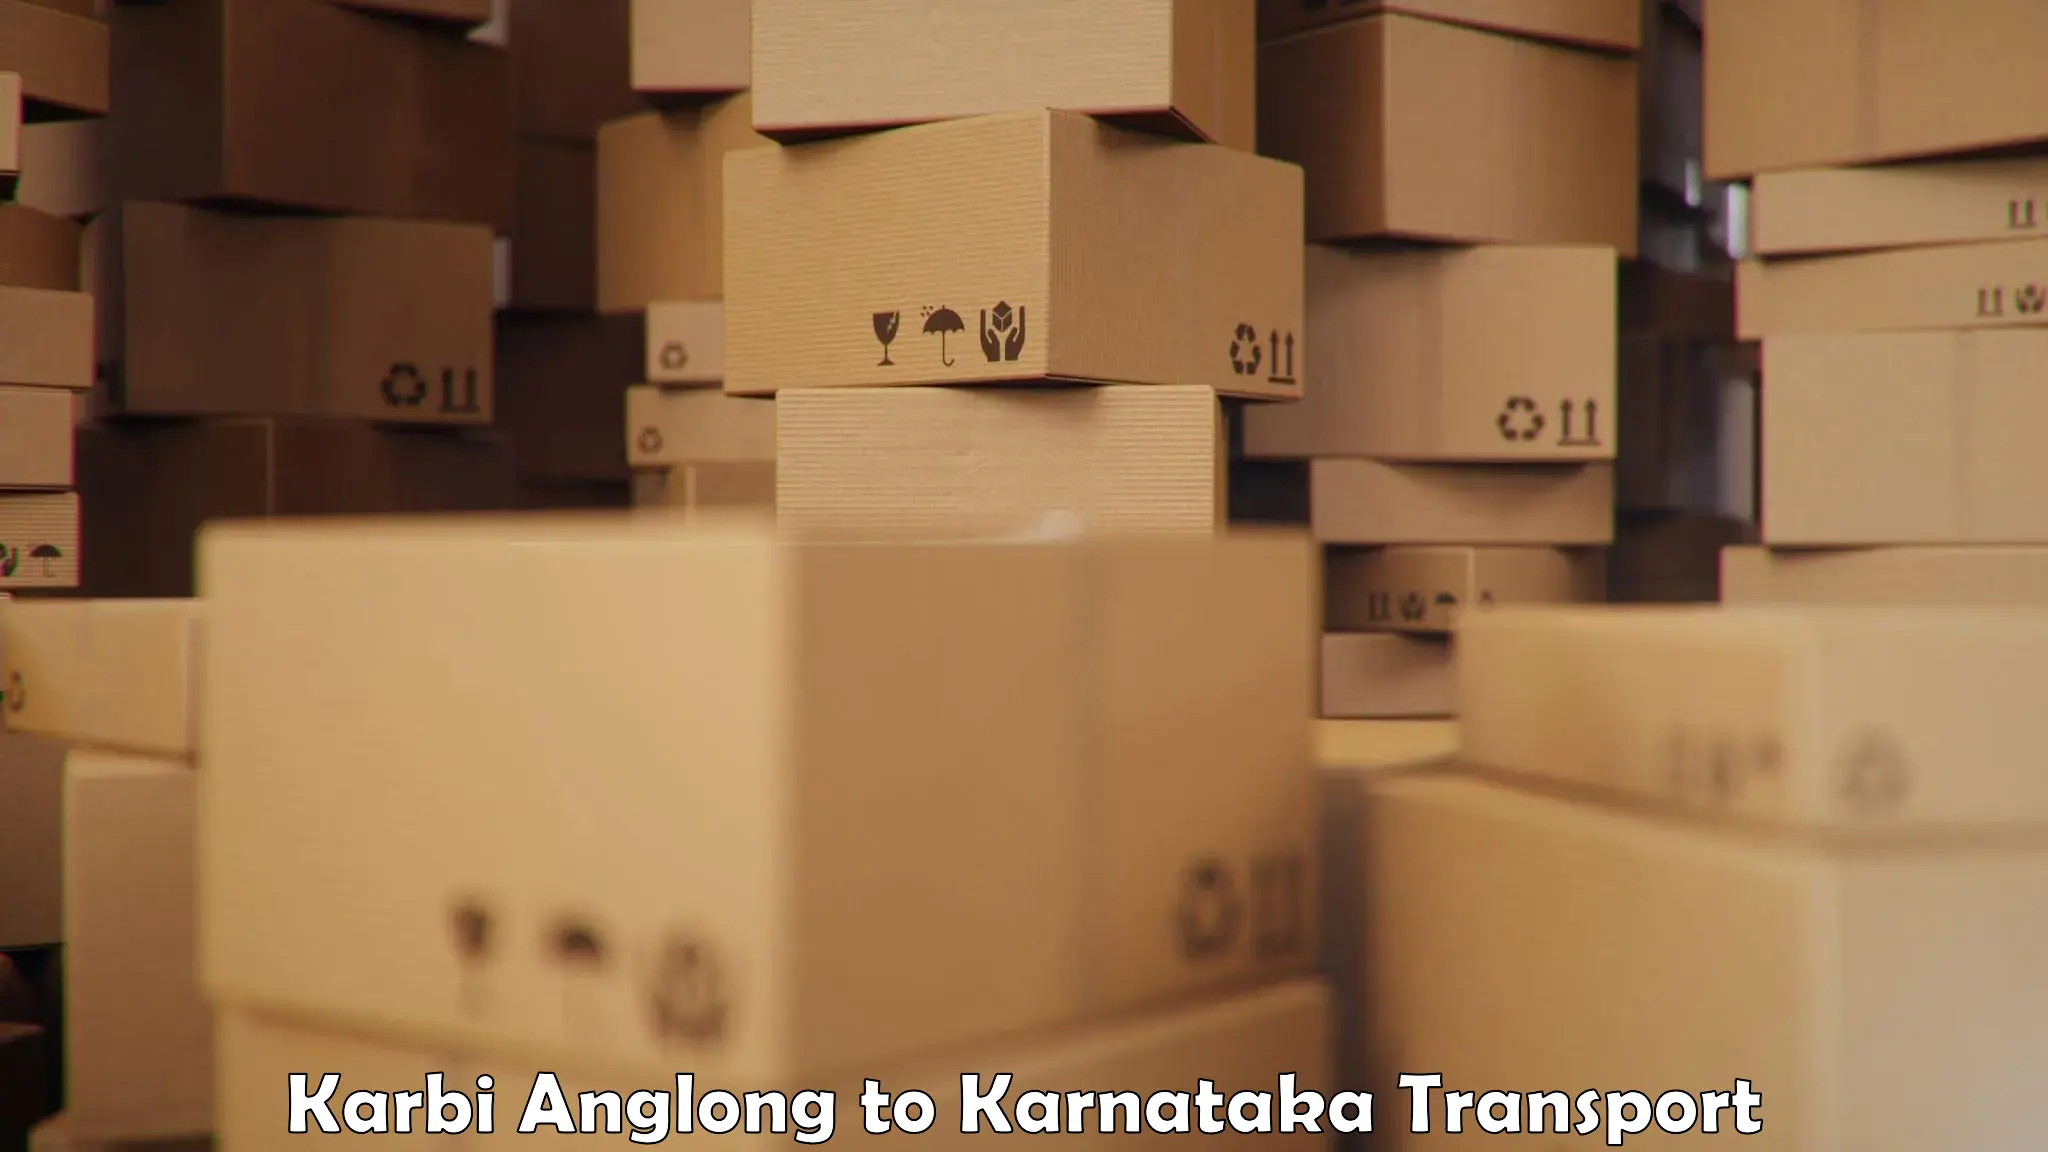 Online transport service Karbi Anglong to Dandeli